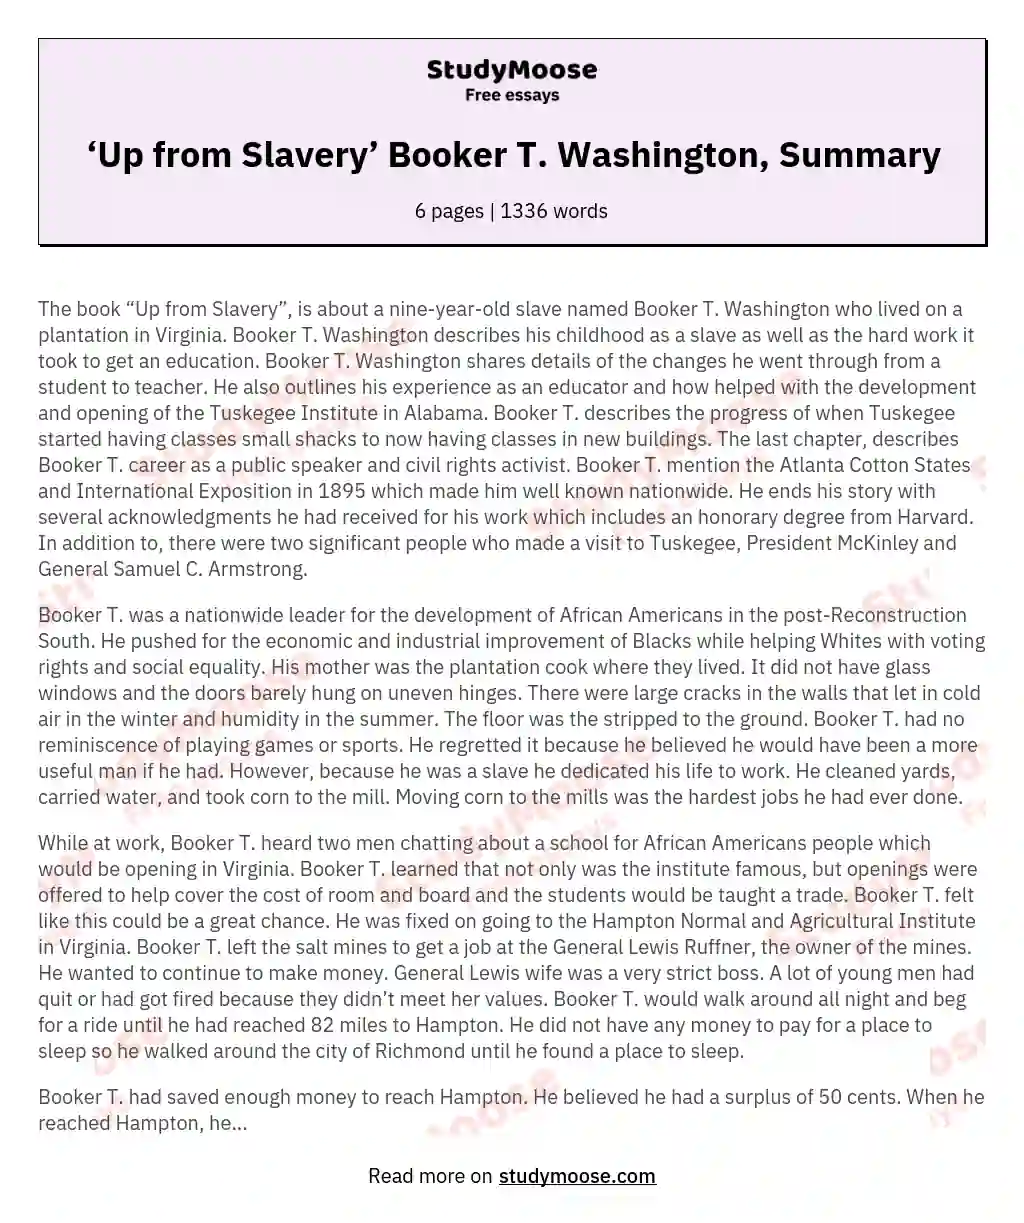 booker t washington up from slavery essay